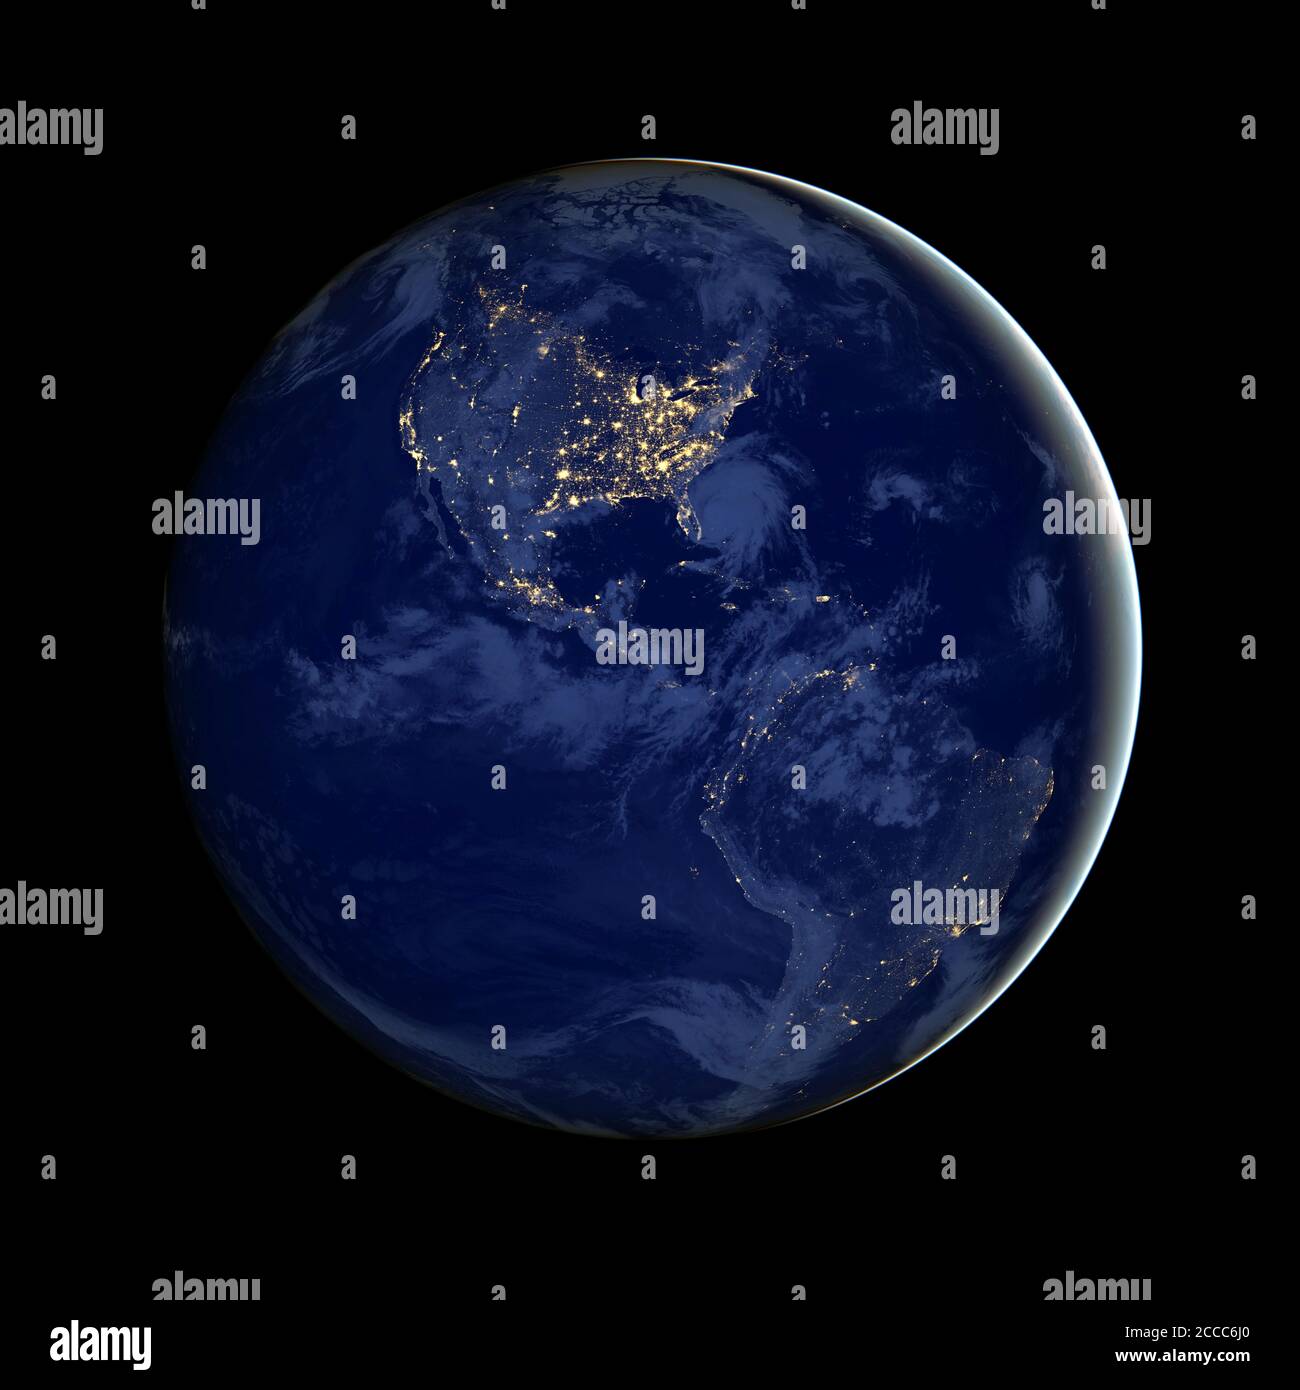 Dieses zusammengesetzte Bild - aus NASA-Satellitendaten - zeigt die westliche Hemisphäre der Erde bei Nacht - Foto: Geopix/NASA/Alamy Stock Photo Stockfoto